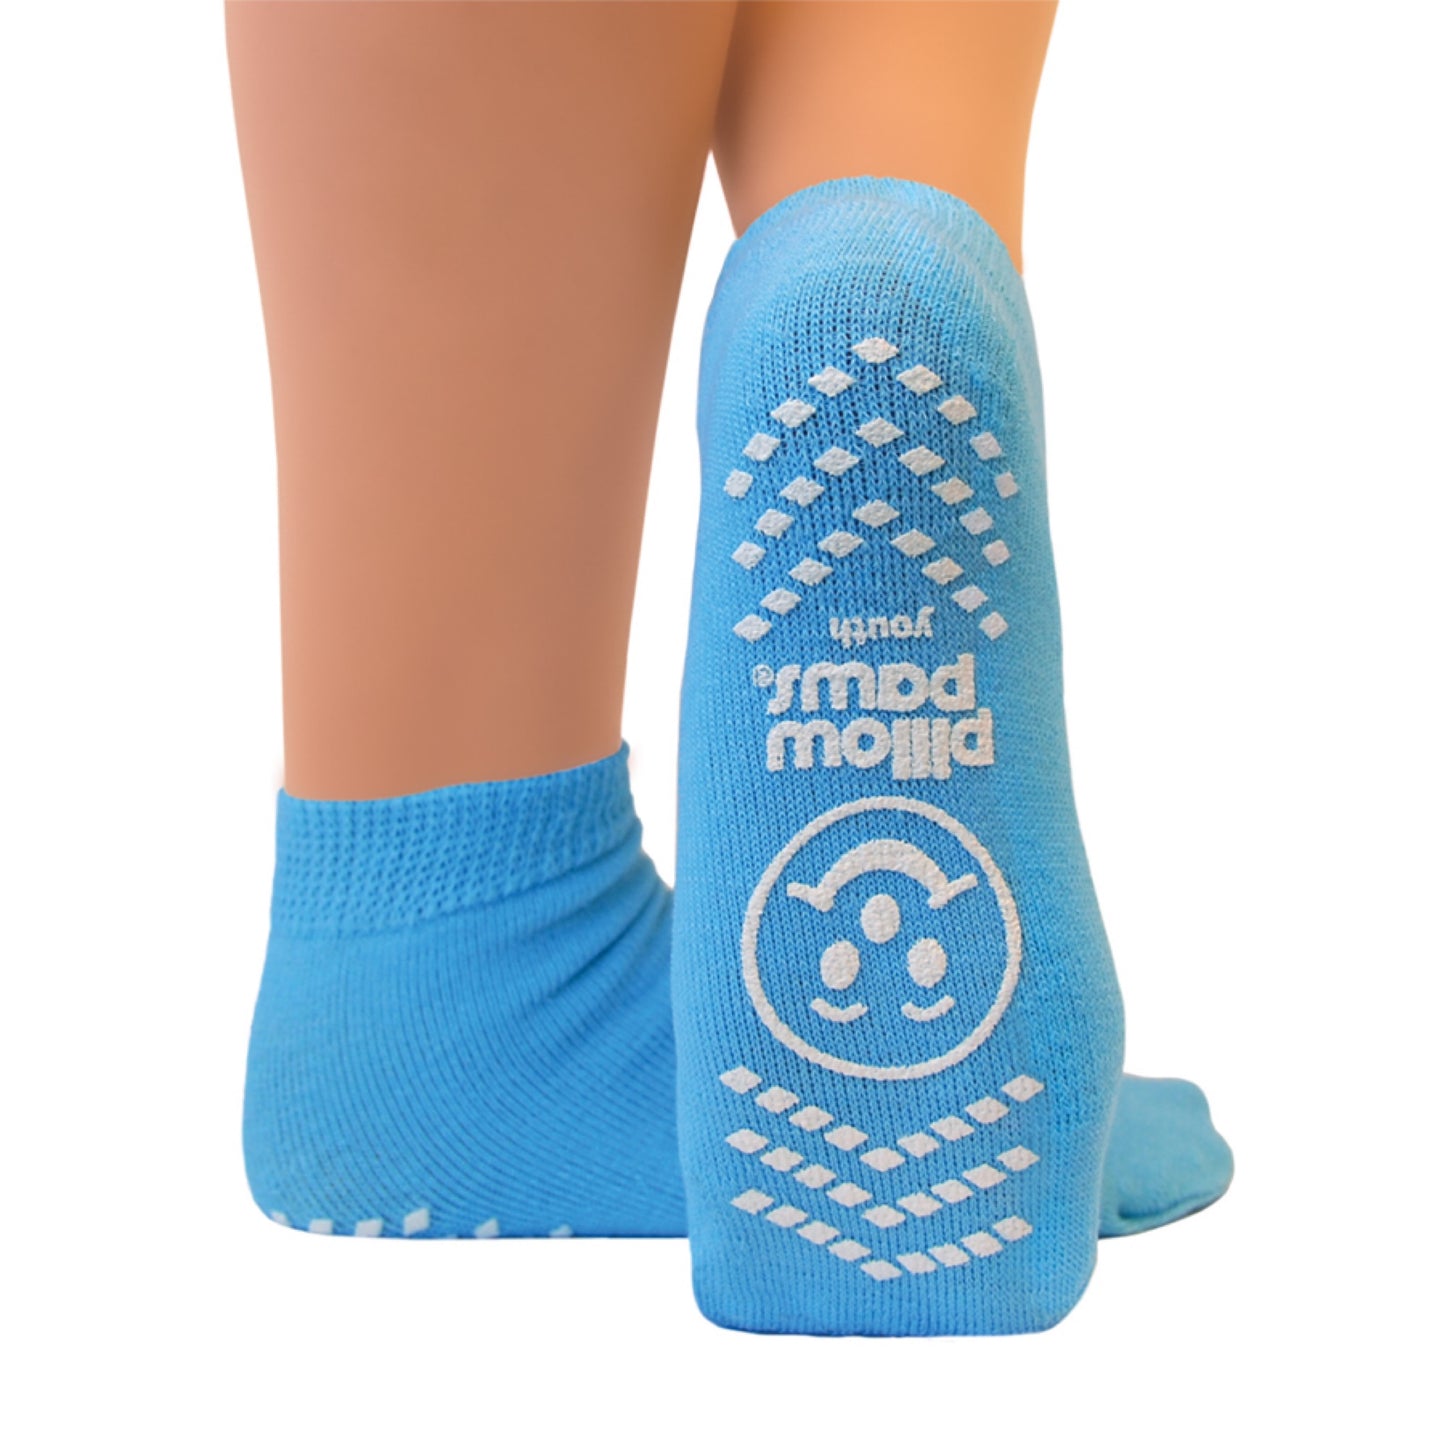 Rutschfeste Socken für Senioren - Größe 26-33 (Himmelblau)